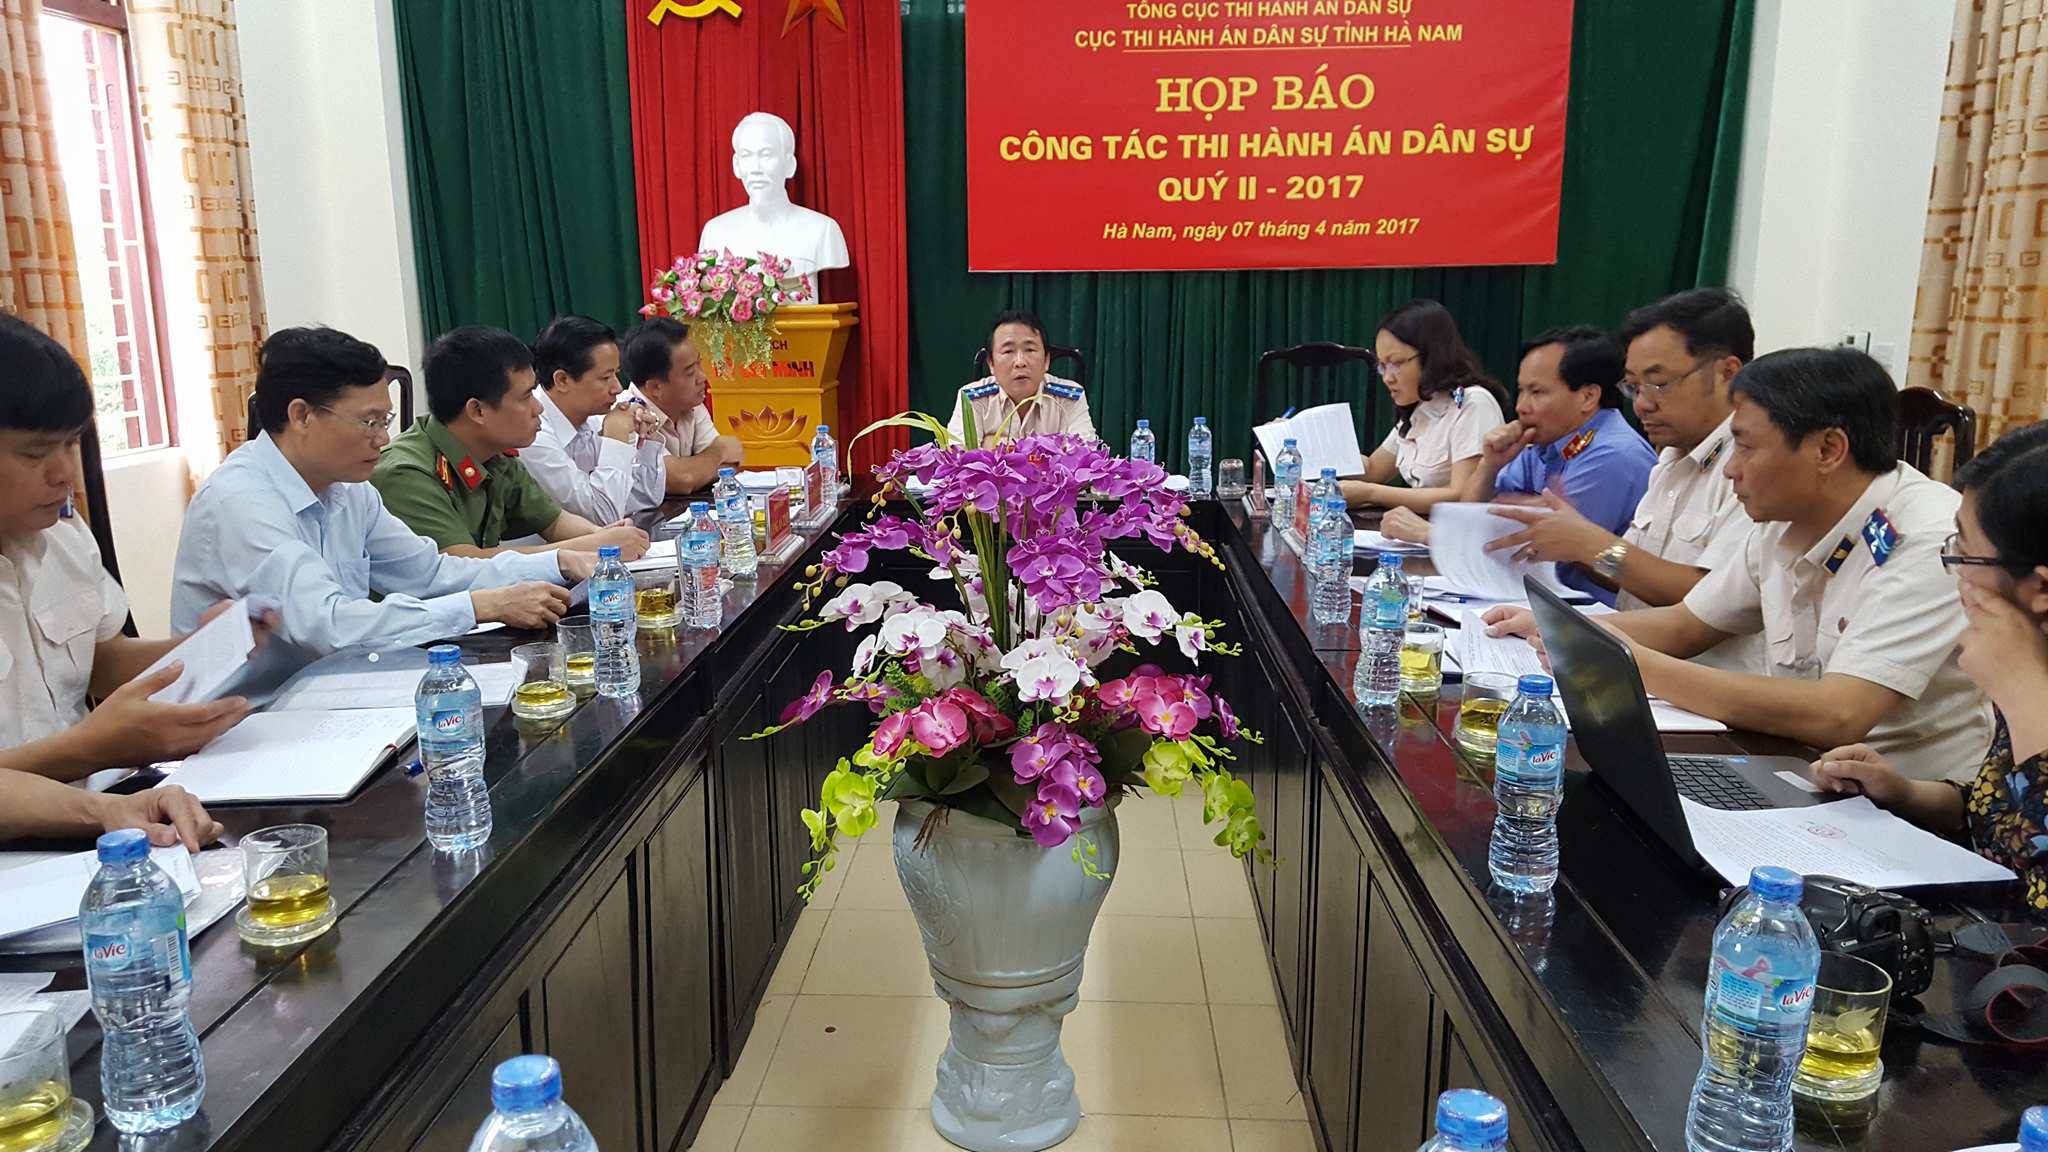 Cục Thi hành án dân sự tỉnh Hà Nam tổ chức họp báo quý II năm 2017